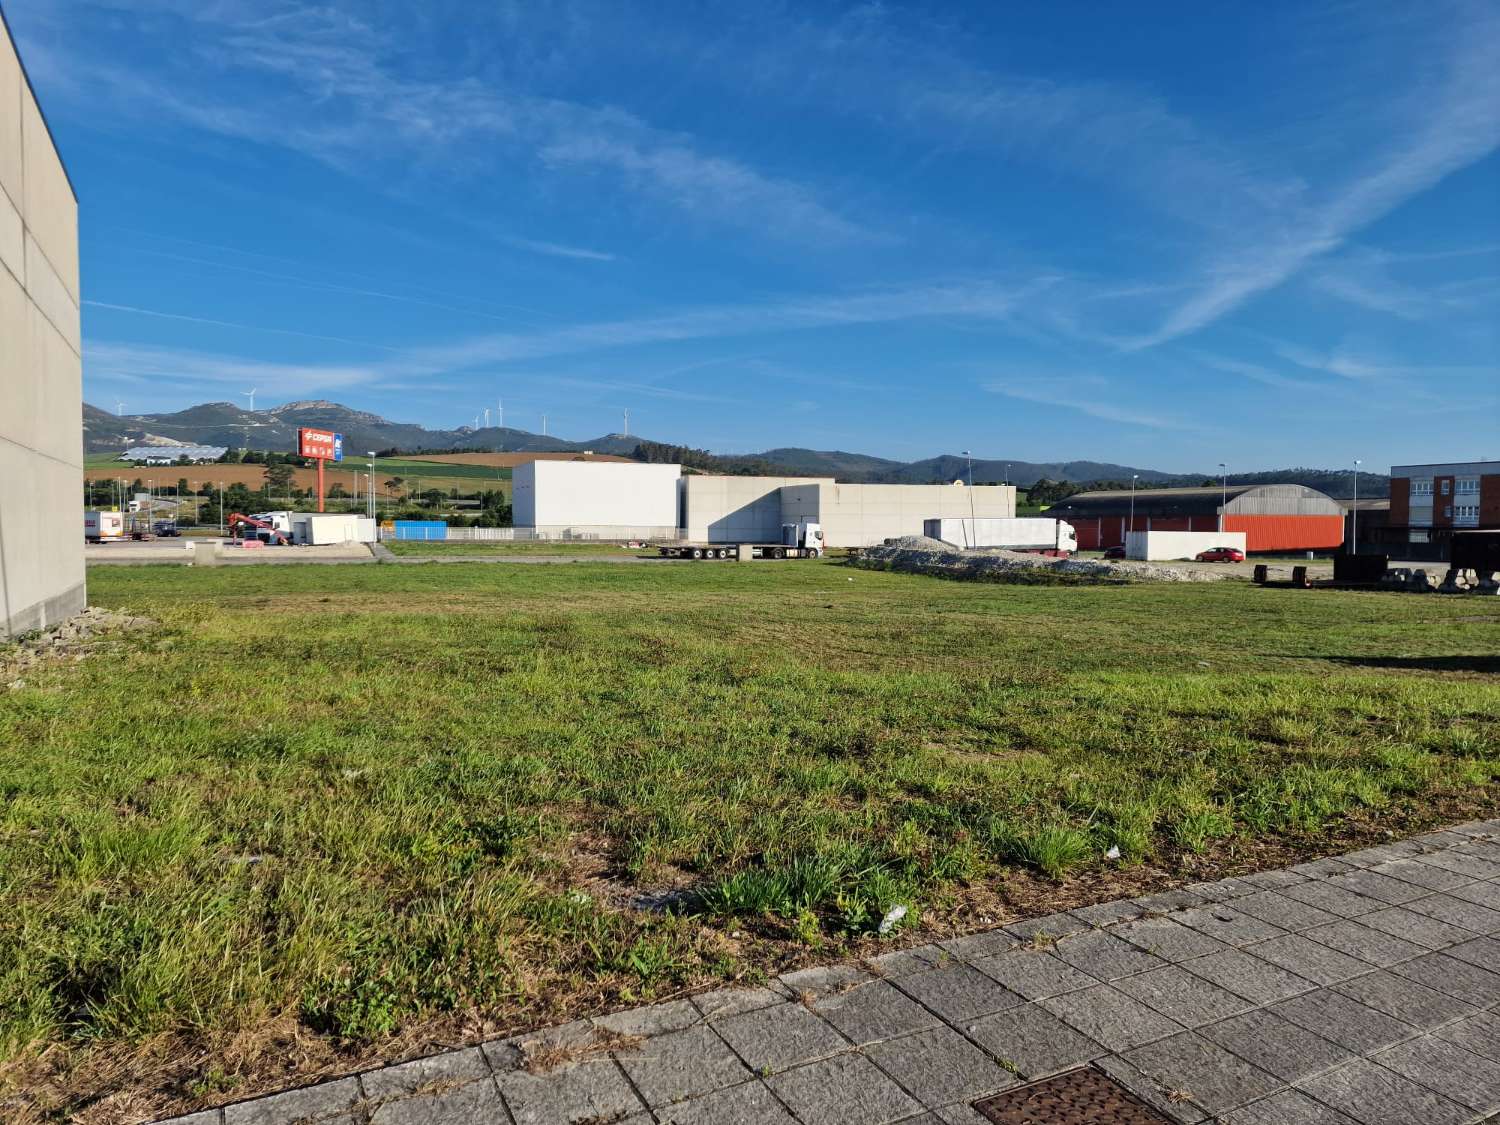 участок земли в продаже в Navia